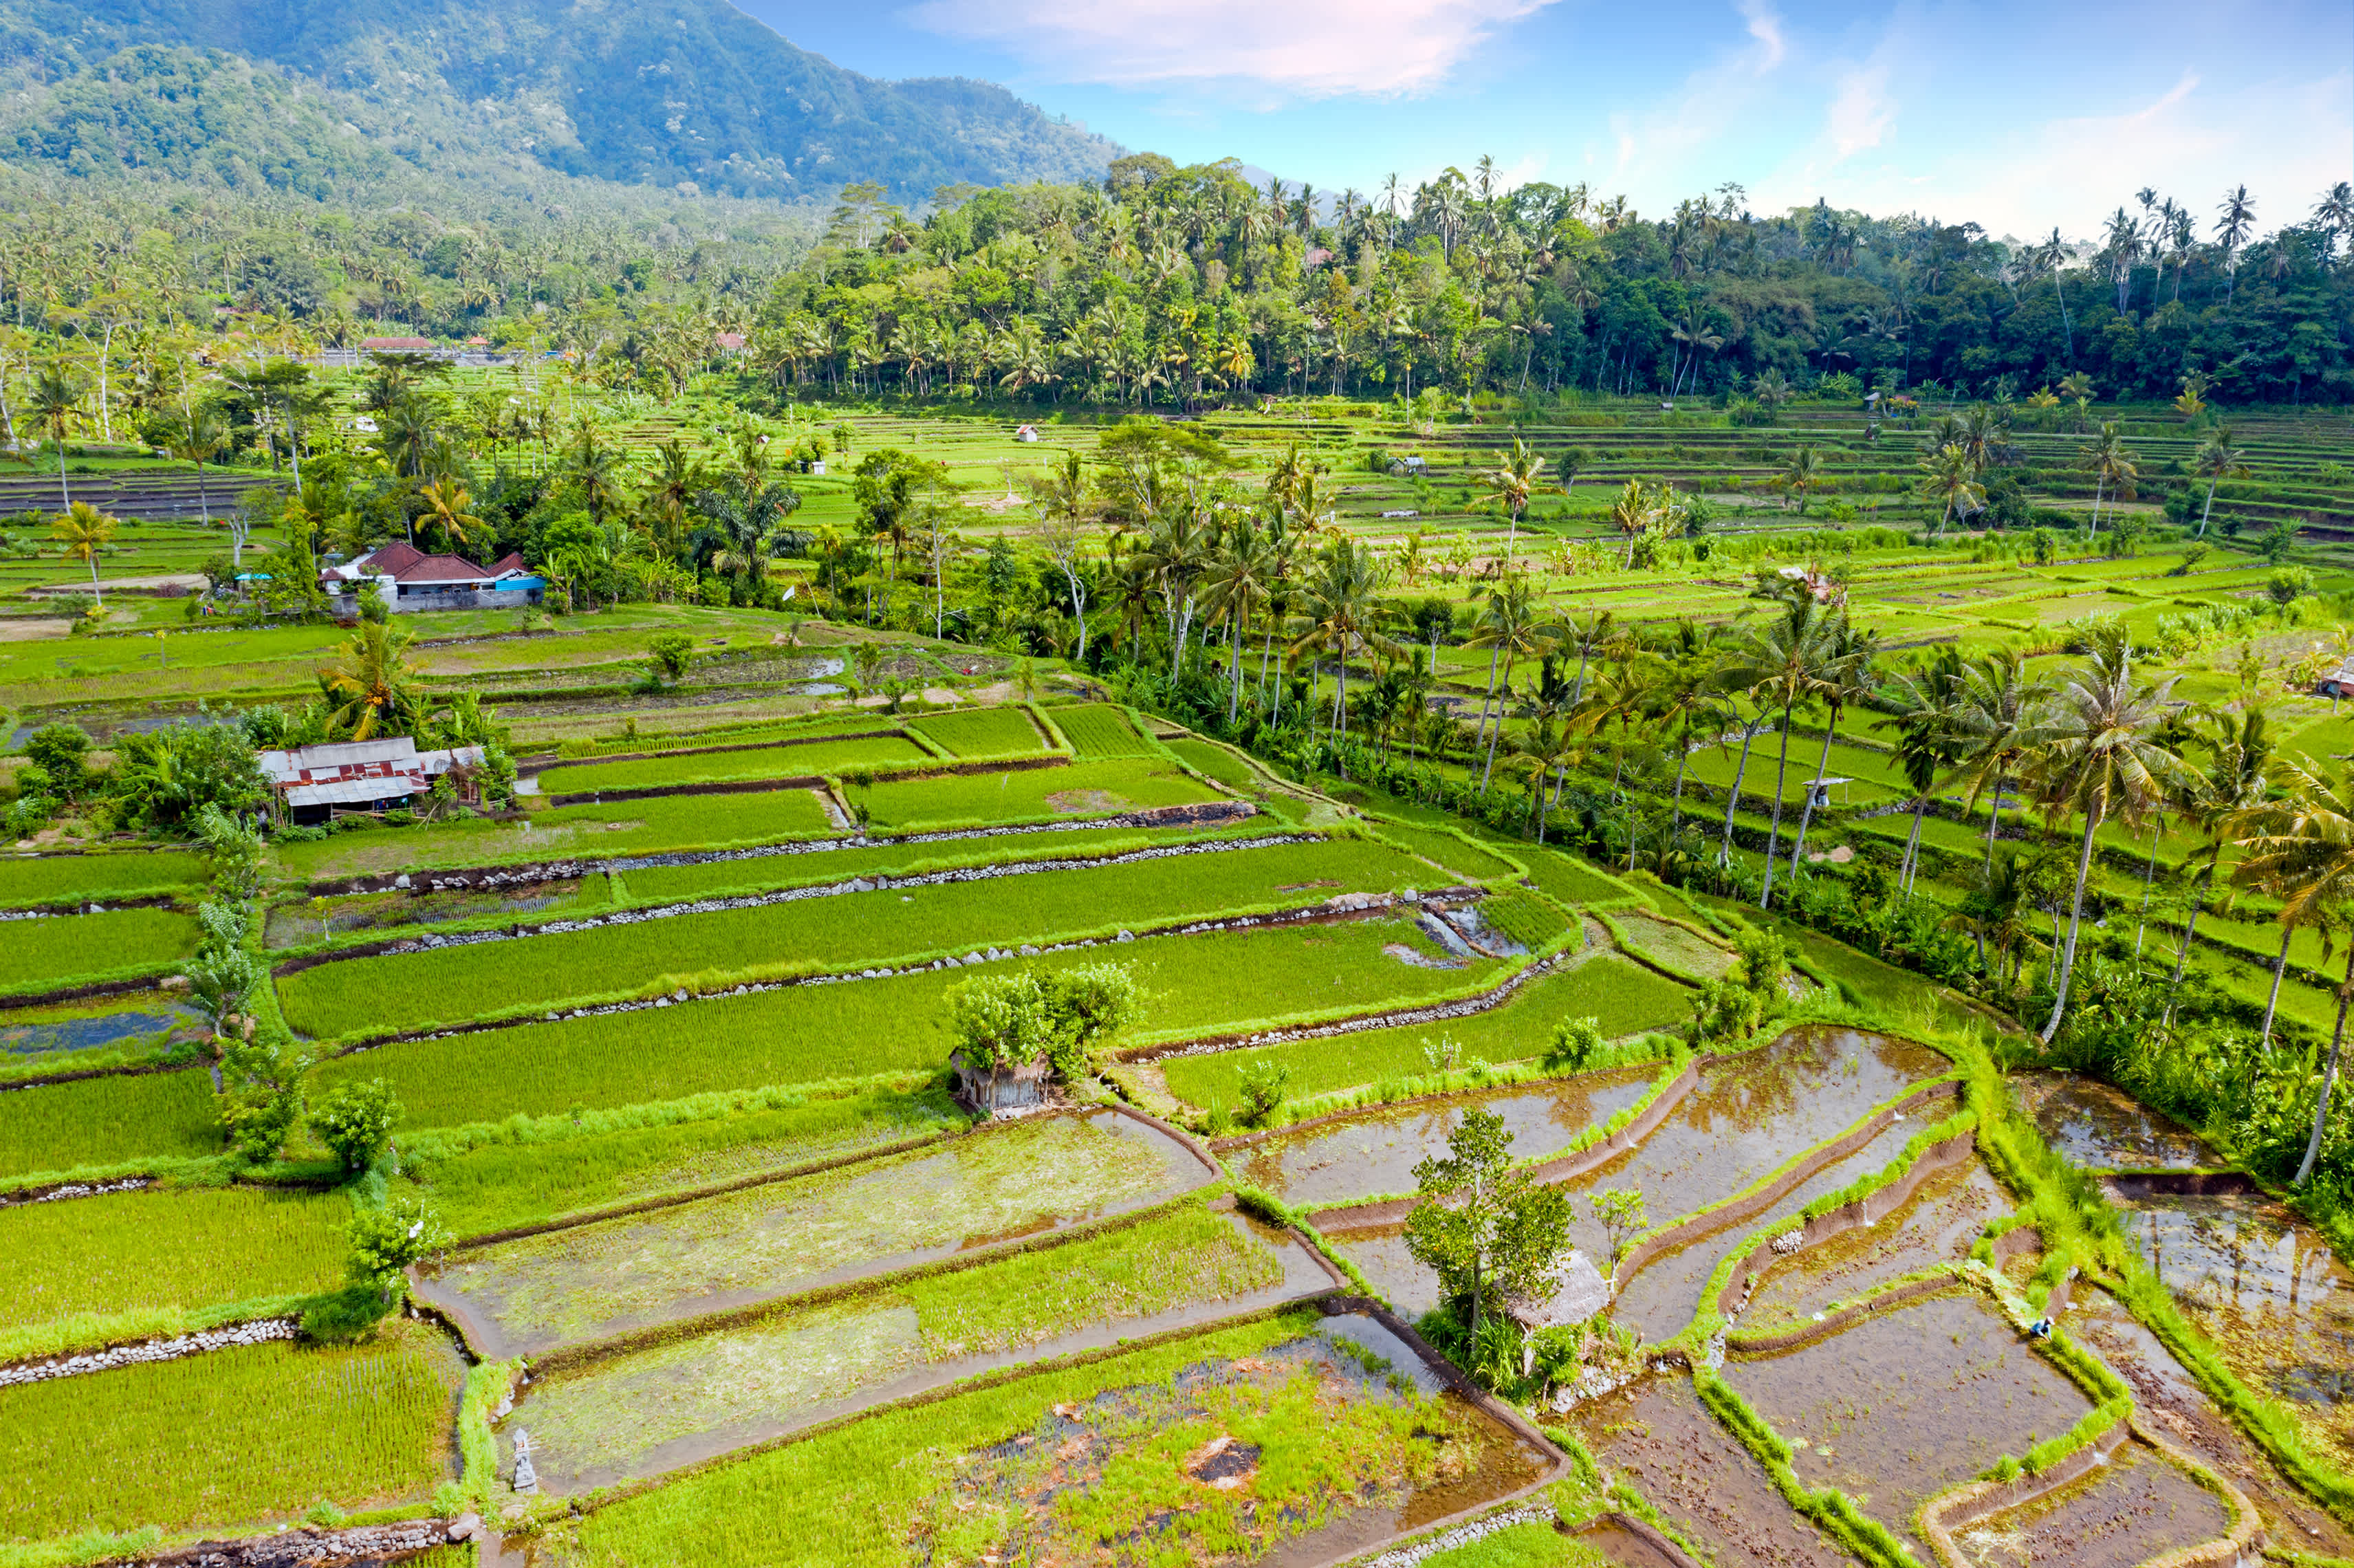 Vue aérienne de rizières en terrasses à Sidemen, Bali, Indonésie

